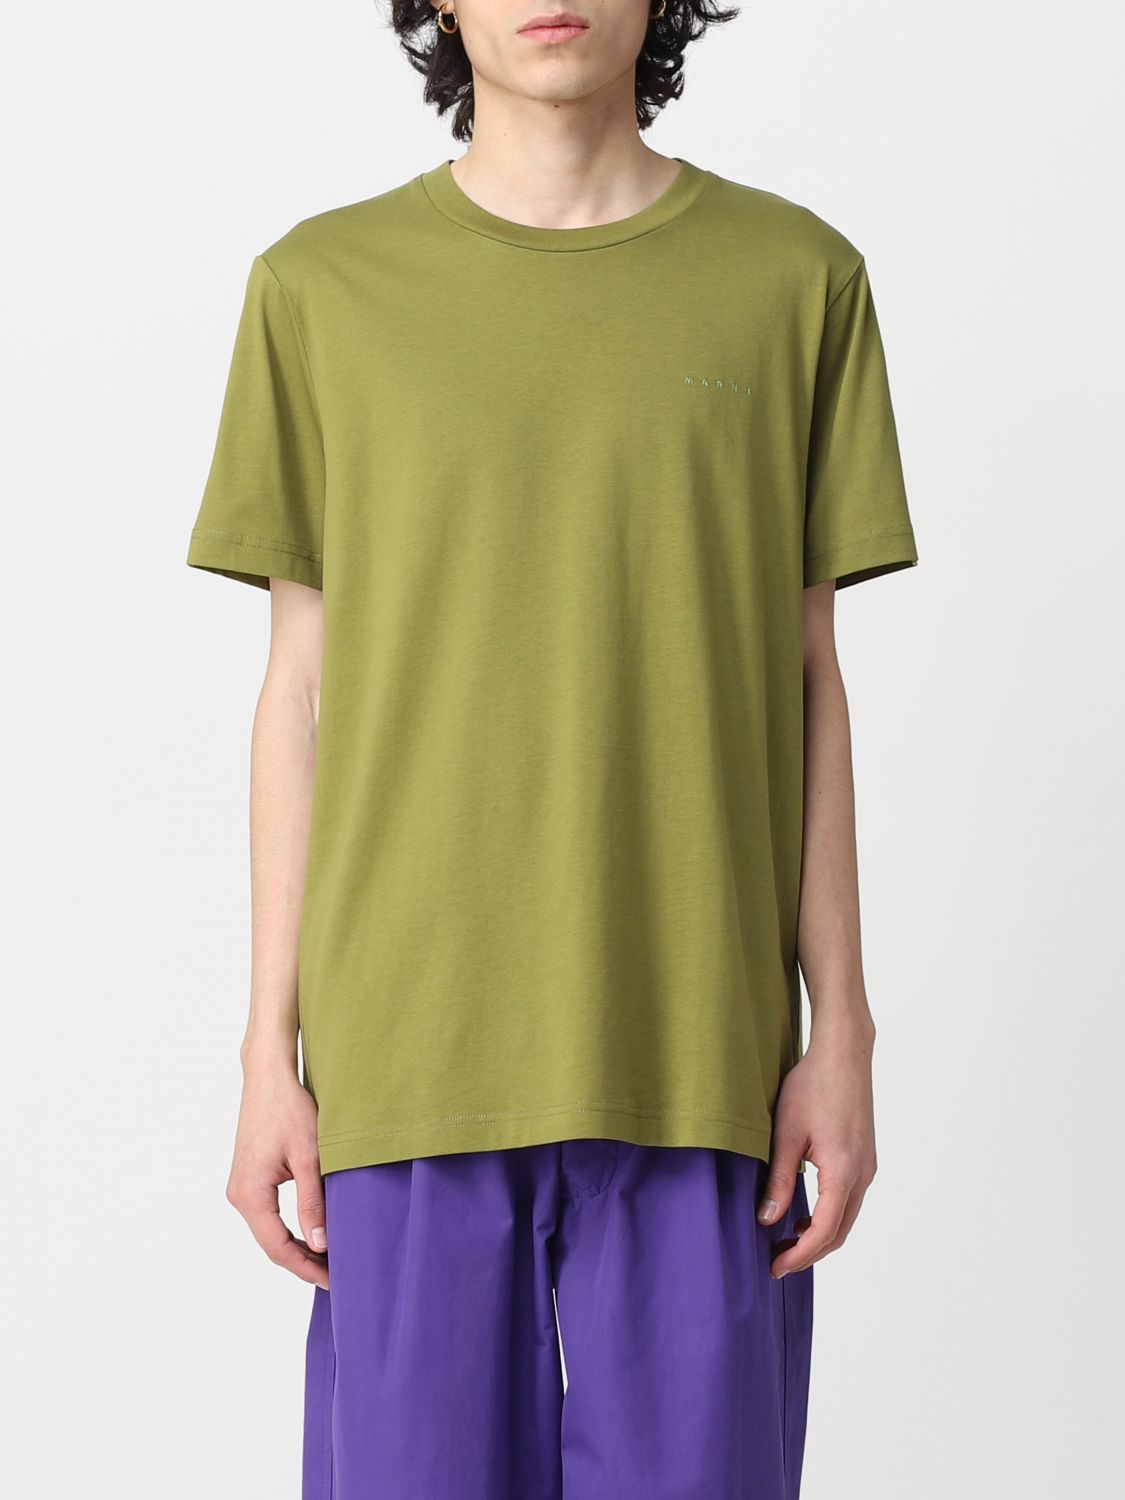 MARNI: basic cotton t-shirt - Green | Marni t-shirt HUMU0170P1USC78 ...